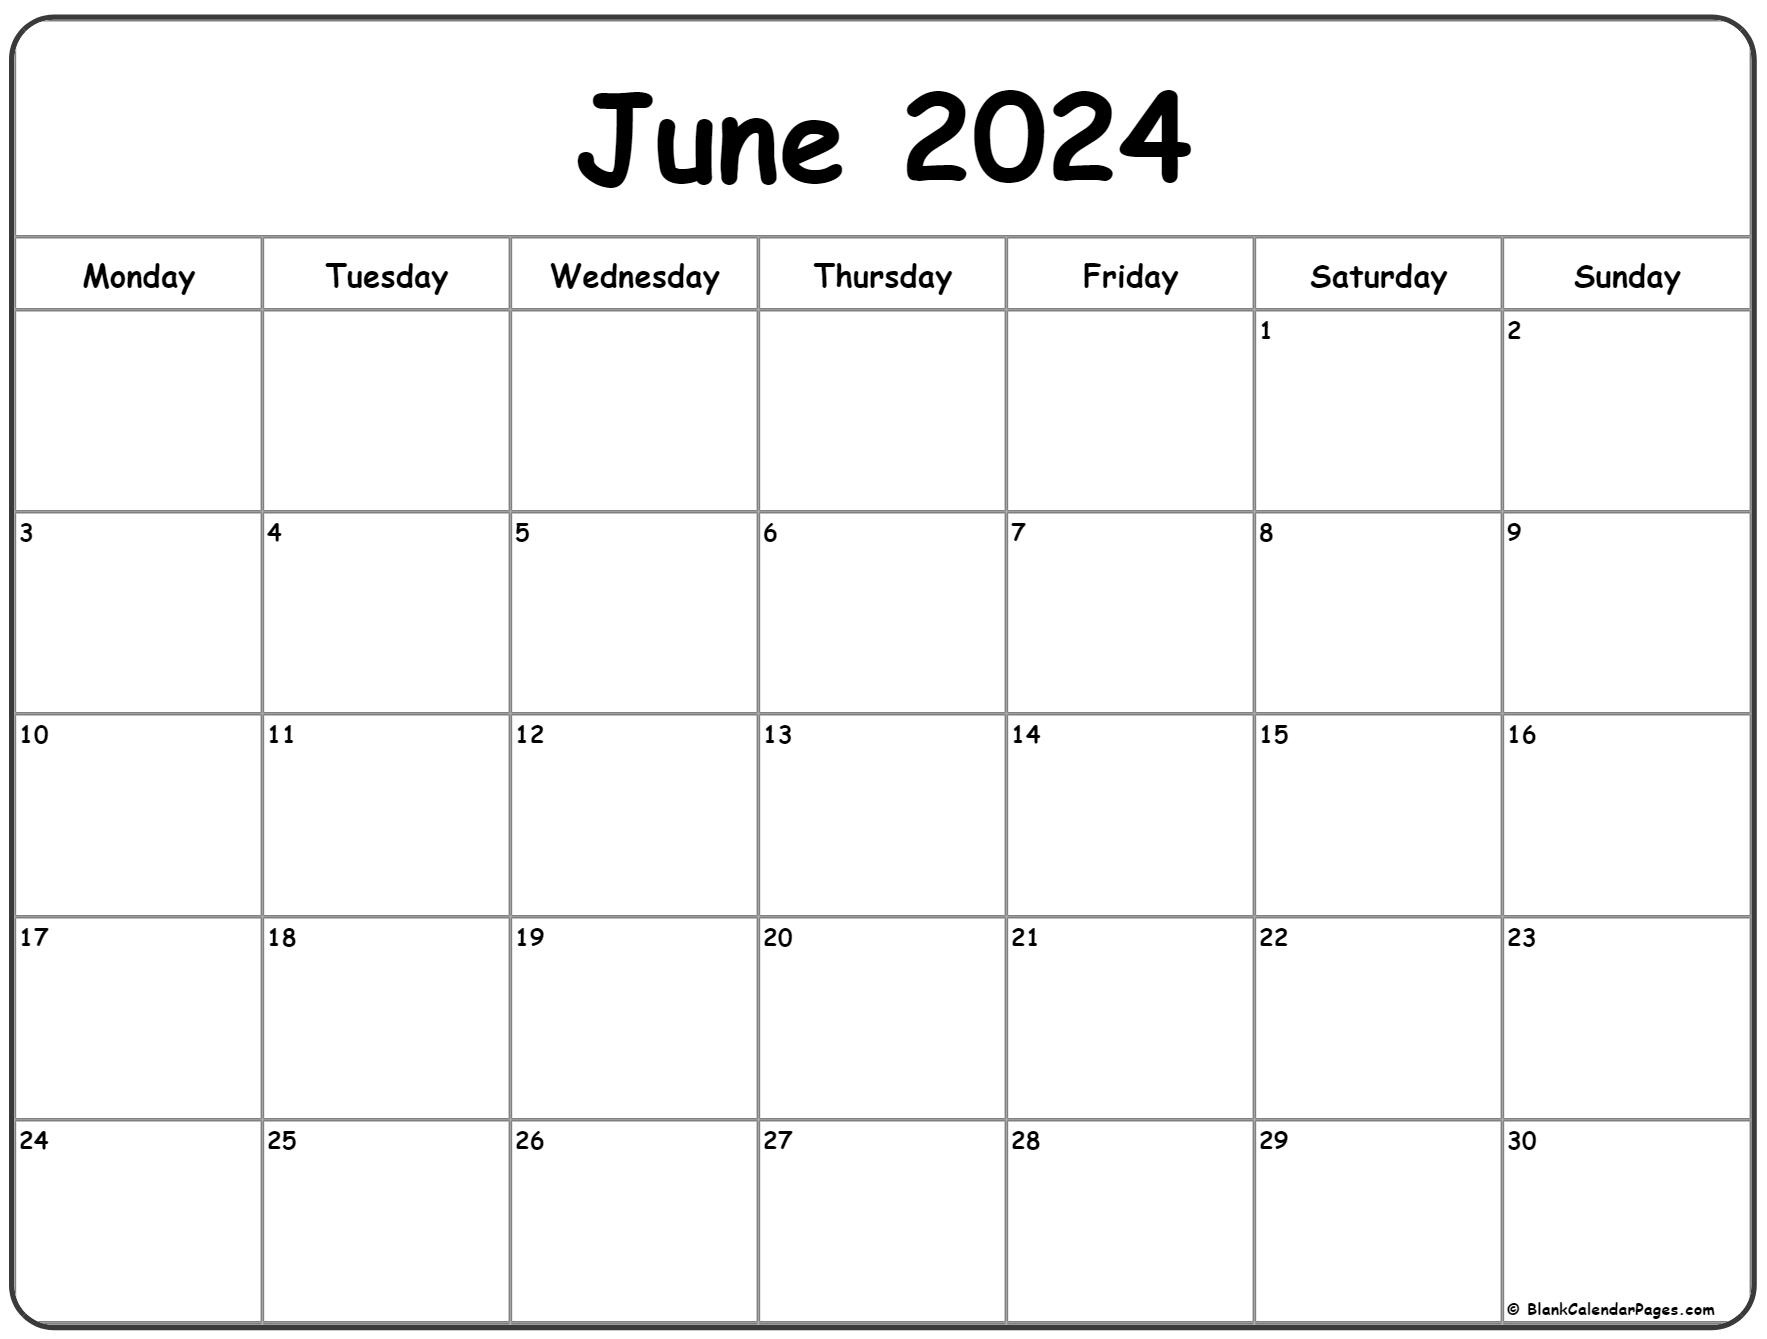 June 2024 Monday Calendar | Monday To Sunday pertaining to Calendar June 2024